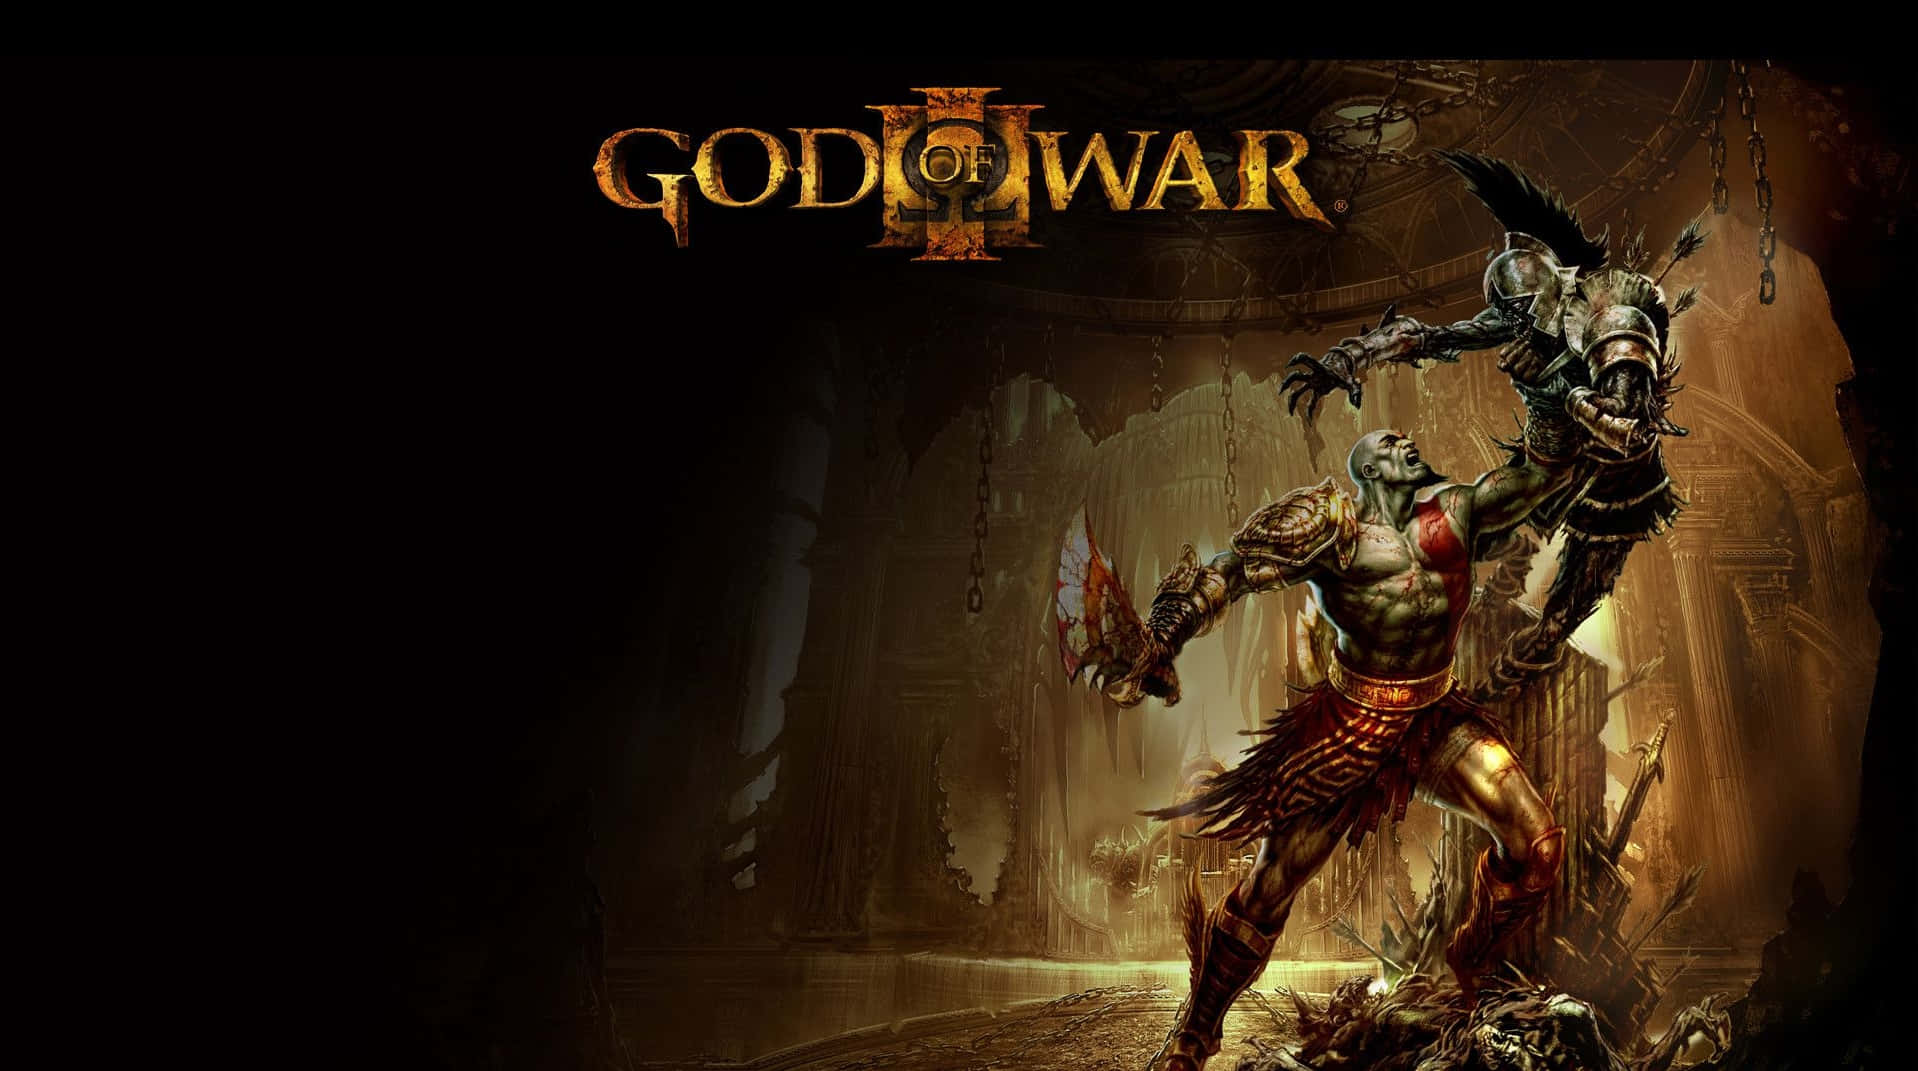 Följmed Kratos På Hans Episka Resa Till Toppen Av Mount Olympus I God Of War Iii. Wallpaper